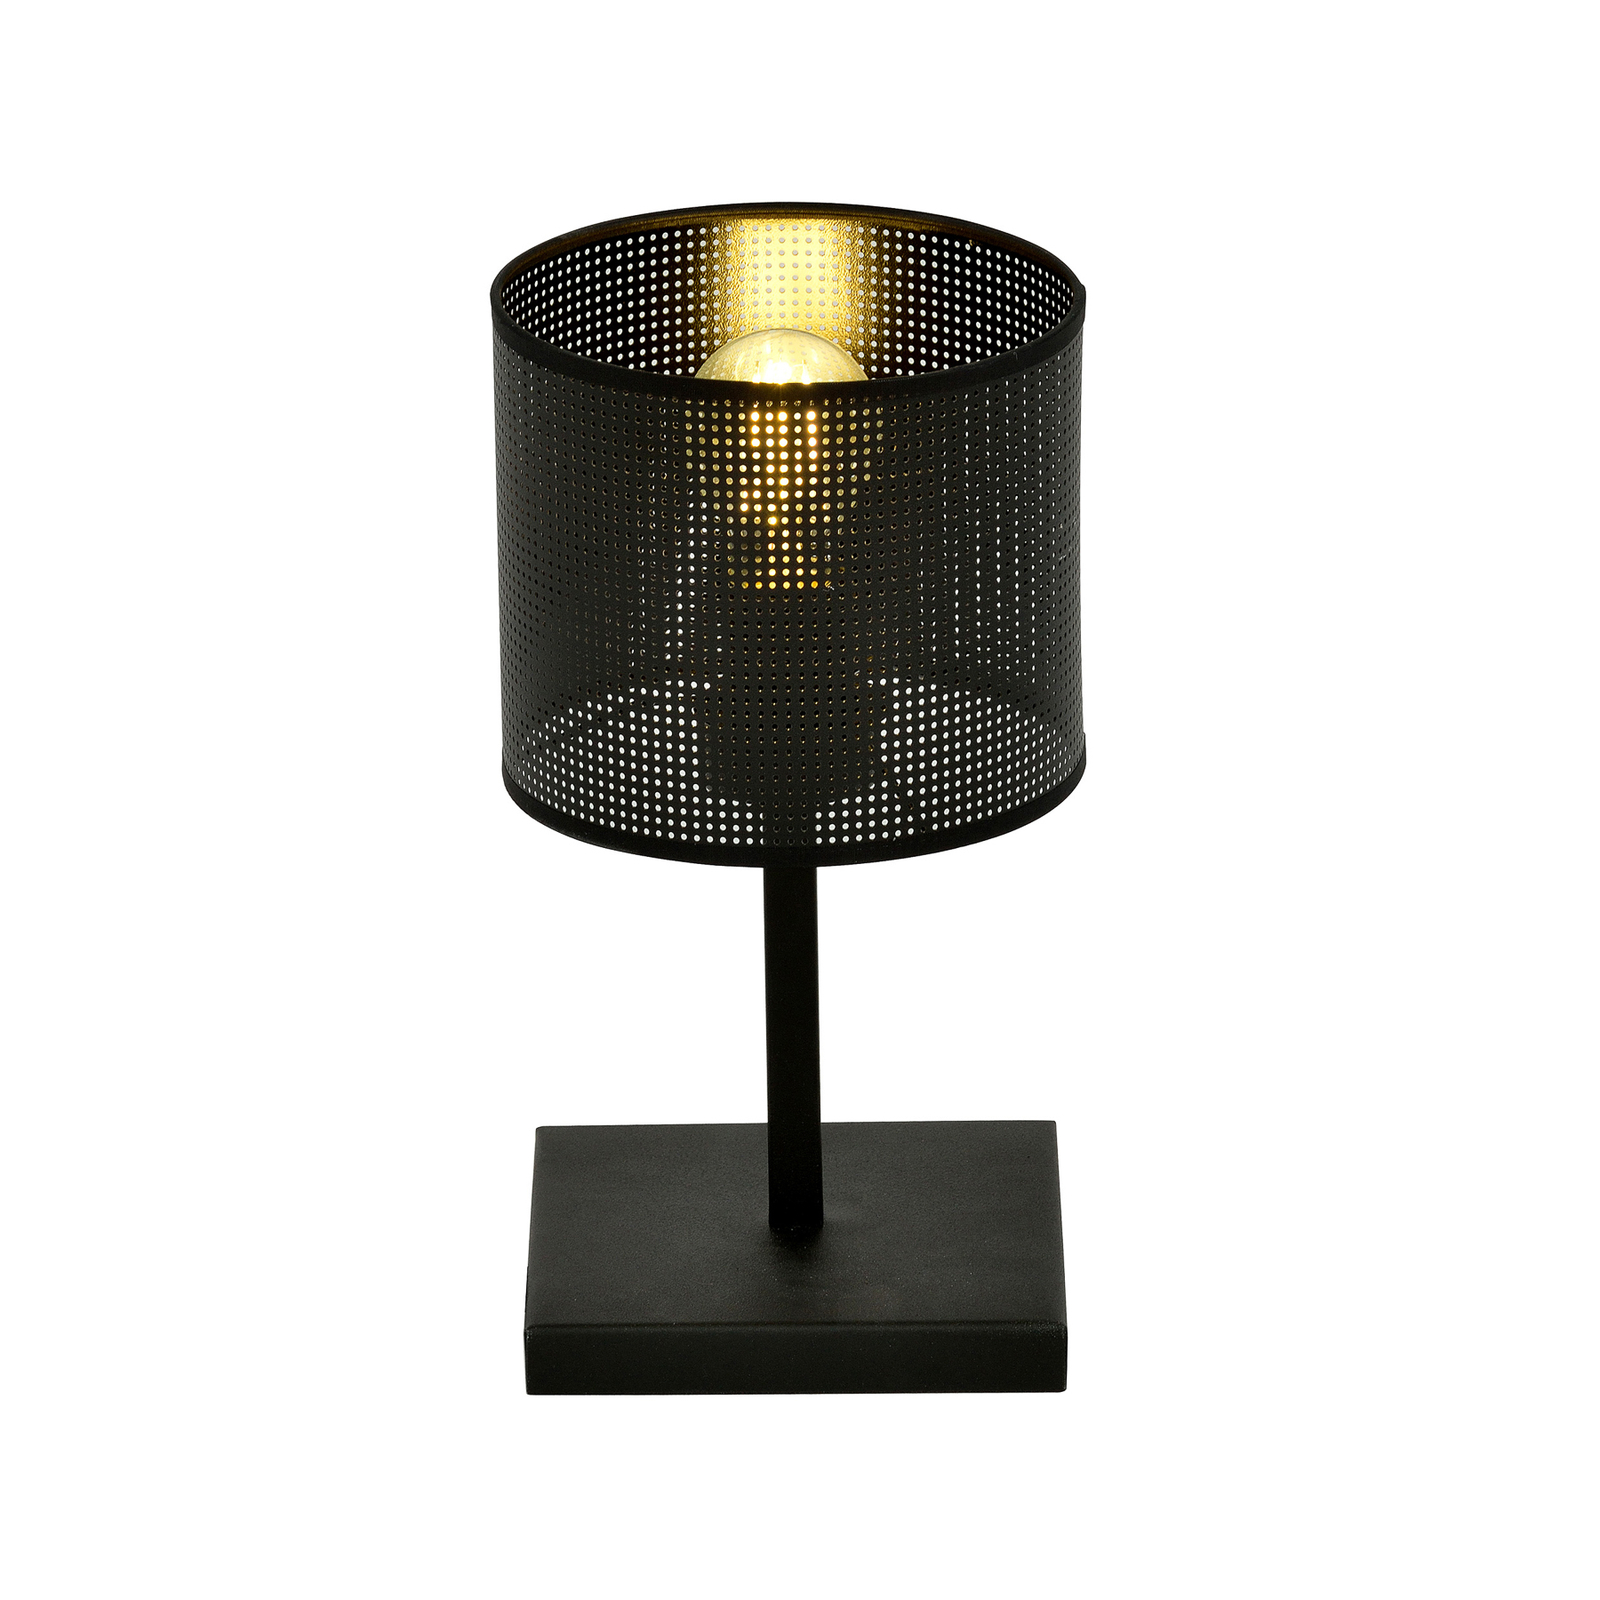 Jordan bordlampe, sort, 1 lyskilde